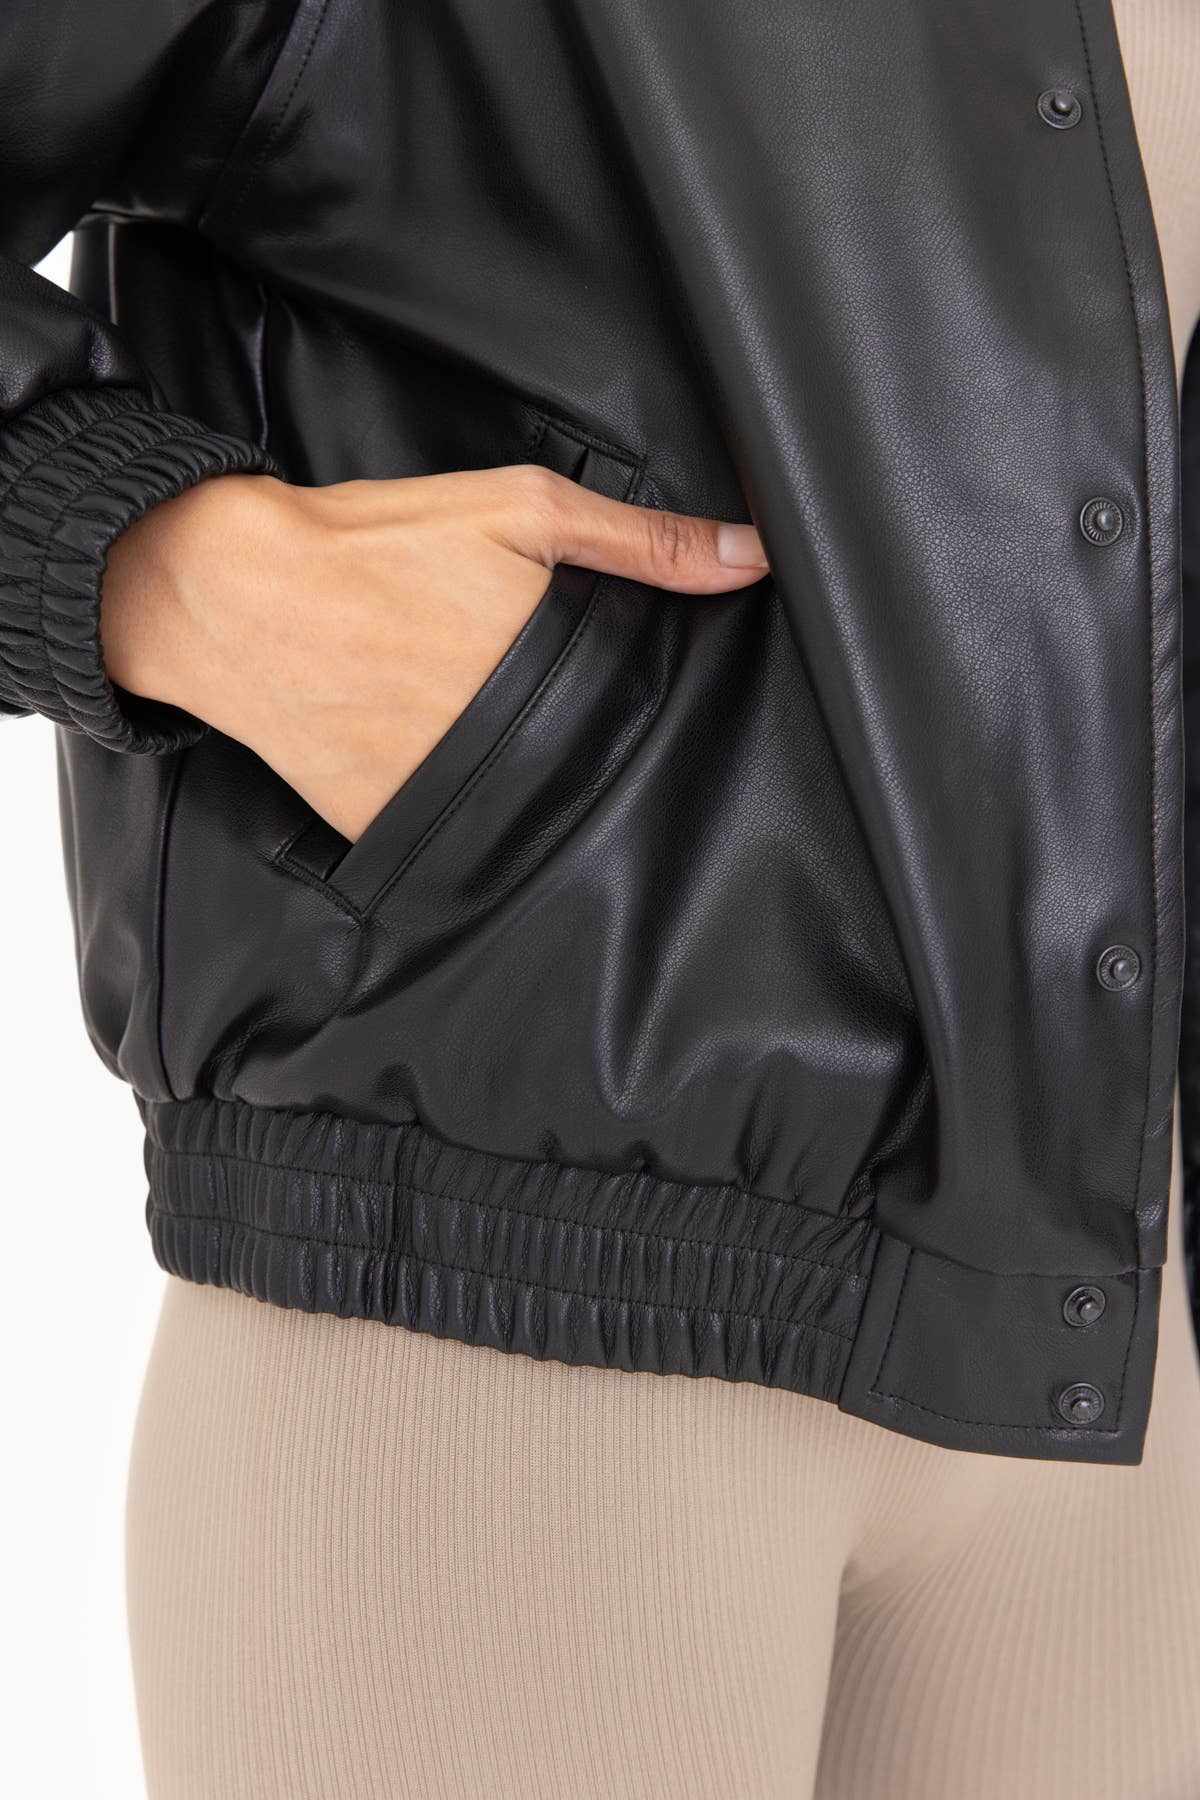 Vegan Leather Bomber Jacket Classic Style Sustainable Quality